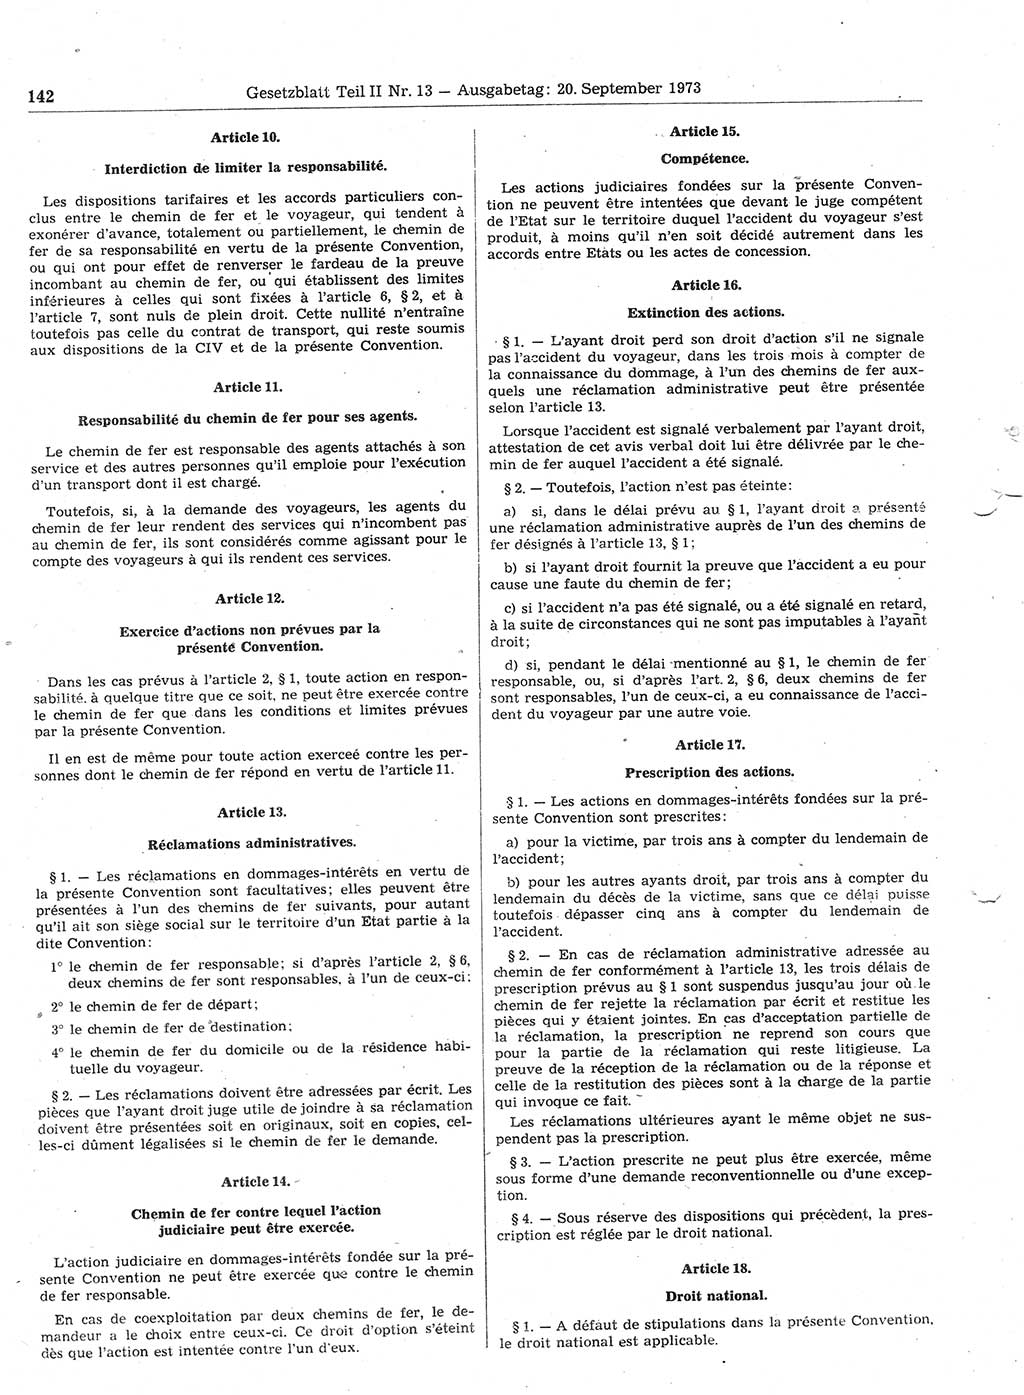 Gesetzblatt (GBl.) der Deutschen Demokratischen Republik (DDR) Teil ⅠⅠ 1973, Seite 142 (GBl. DDR ⅠⅠ 1973, S. 142)